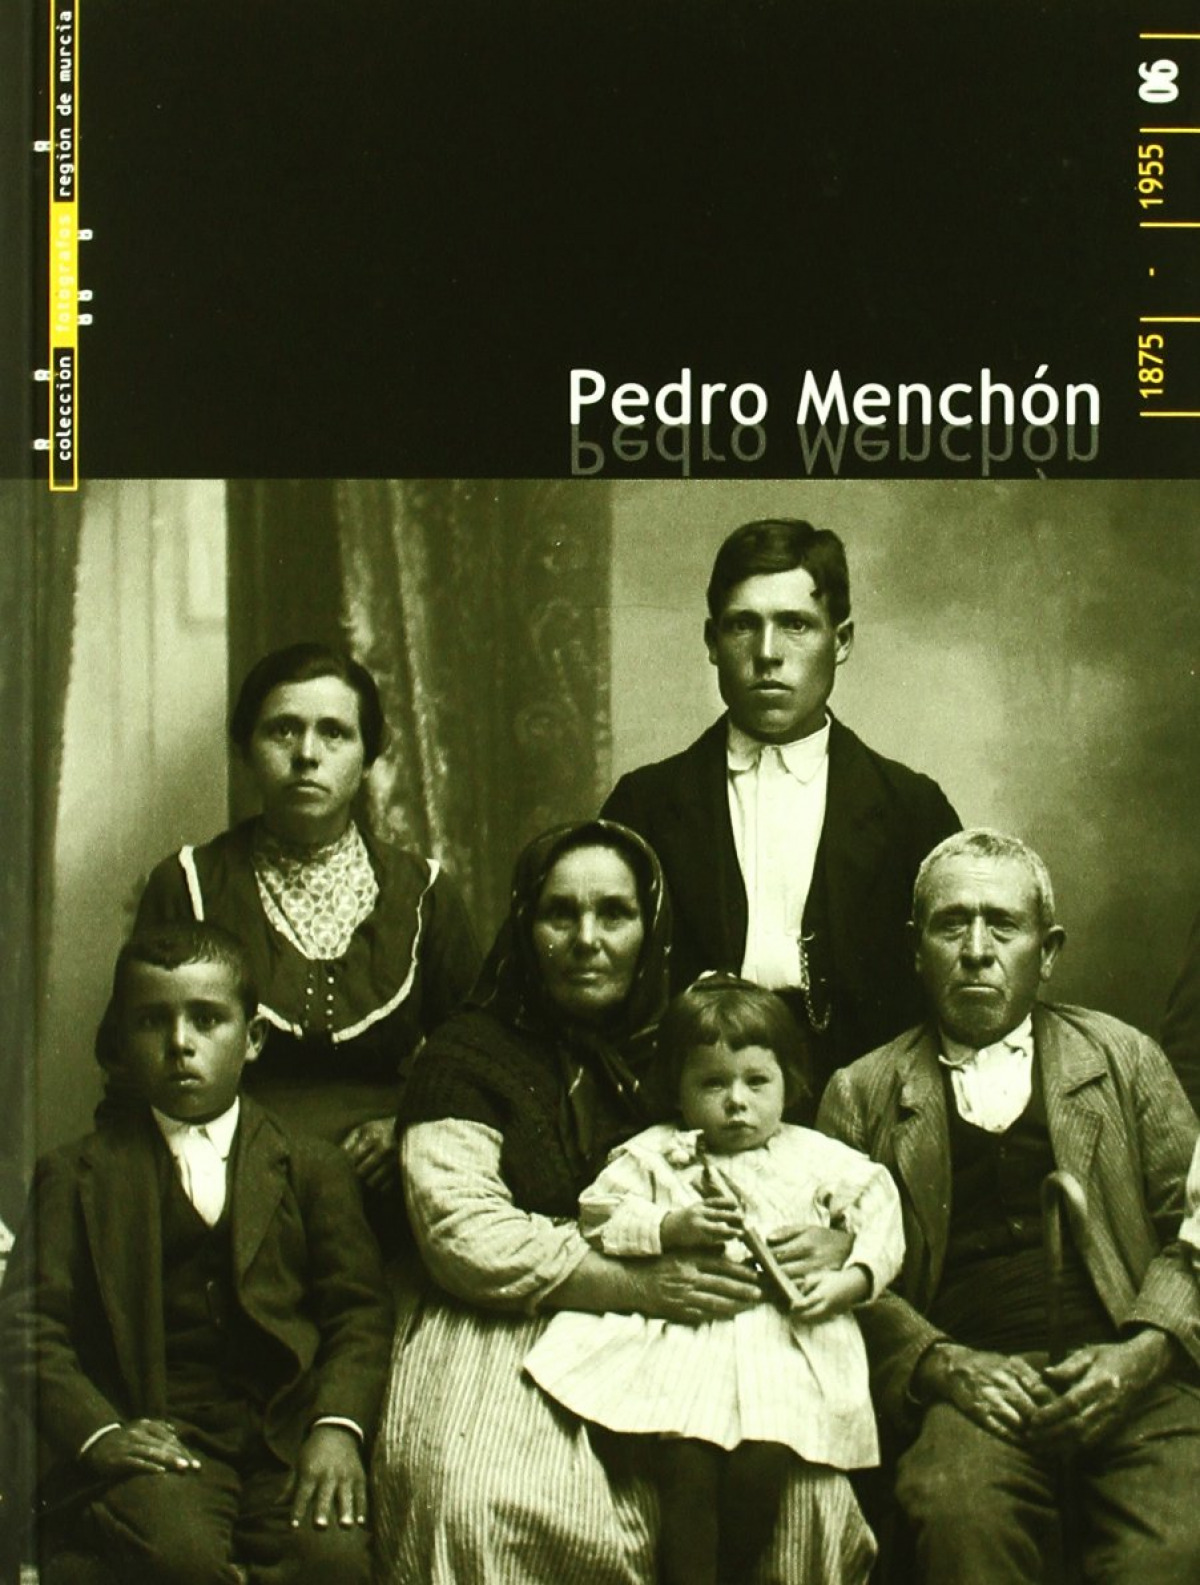 Pedro menchon